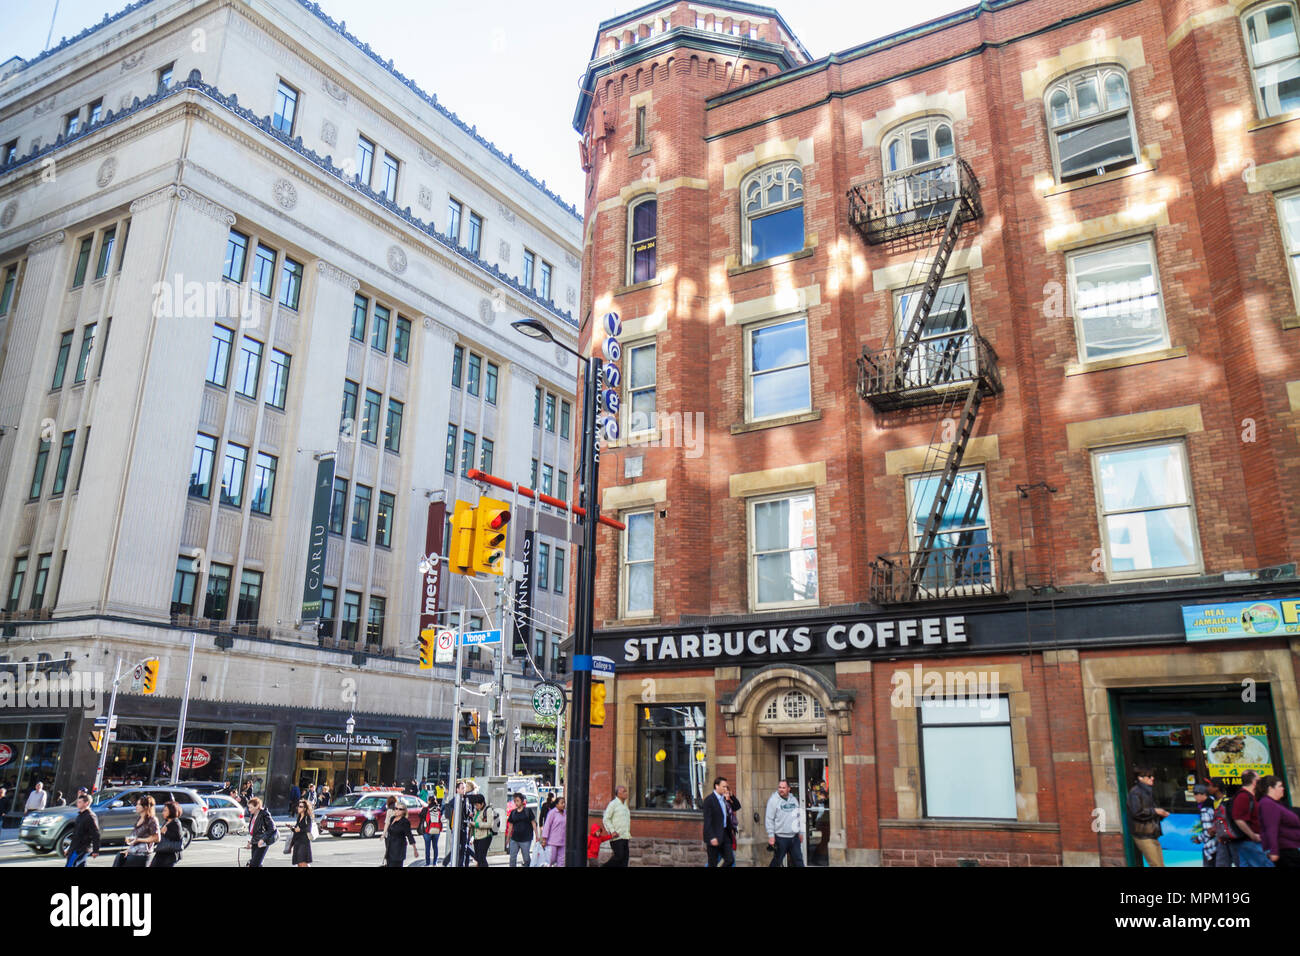 Toronto Canada,College Street,Yonge Street,Street Scene,IOOF Hall,bâtiment historique,Renaissance gothique,café,Starbucks Coffee,Barista,panneau,College Park,sho Banque D'Images